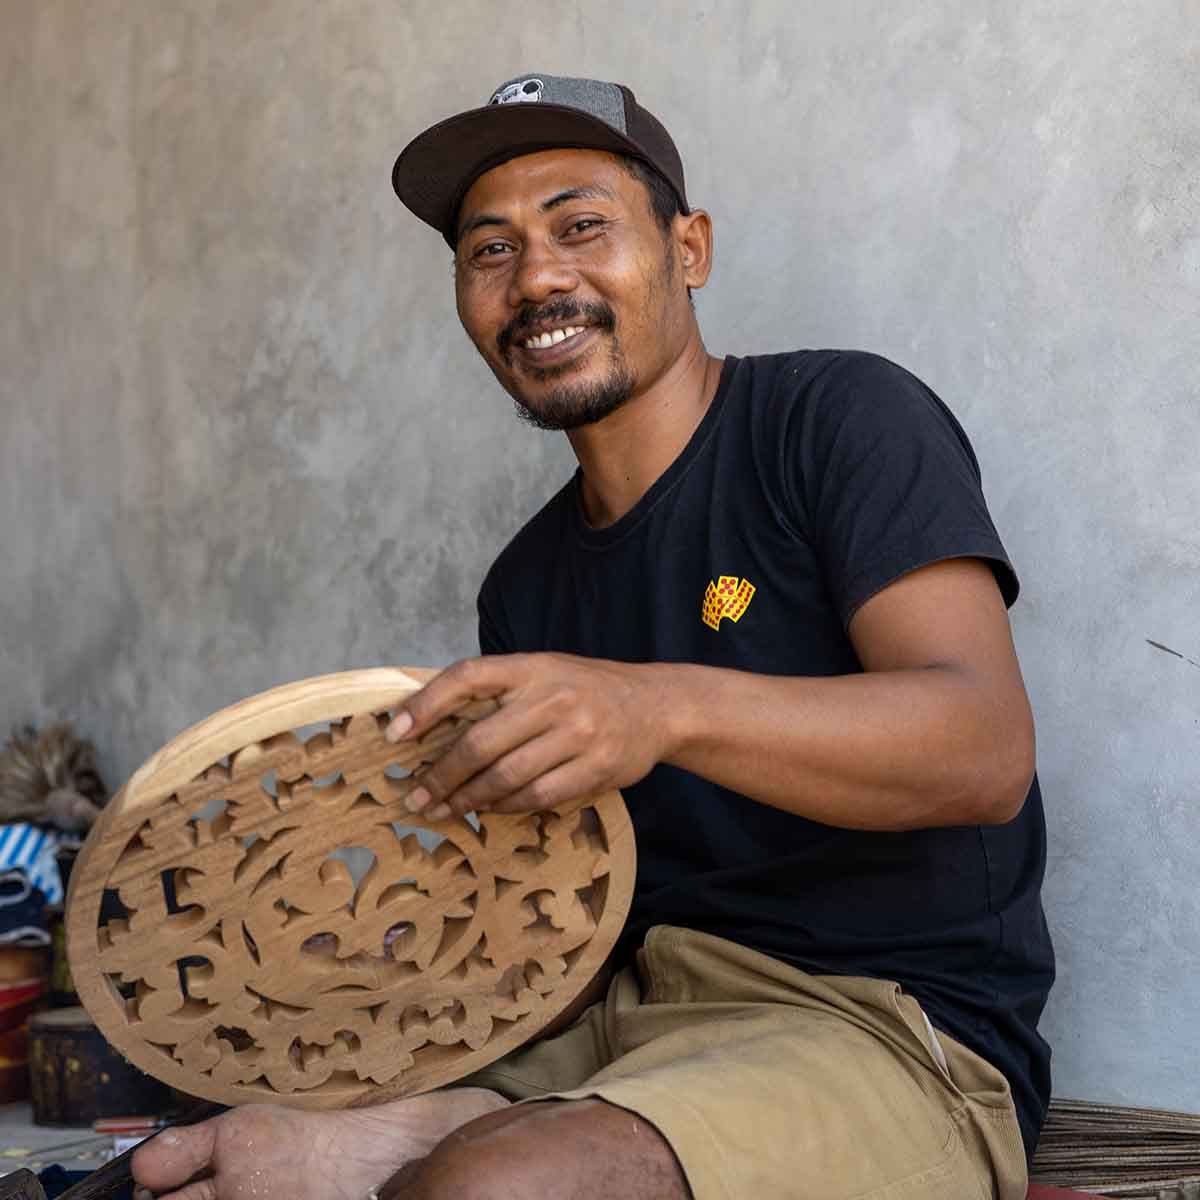 Bali-Wood Carved Om Symbol